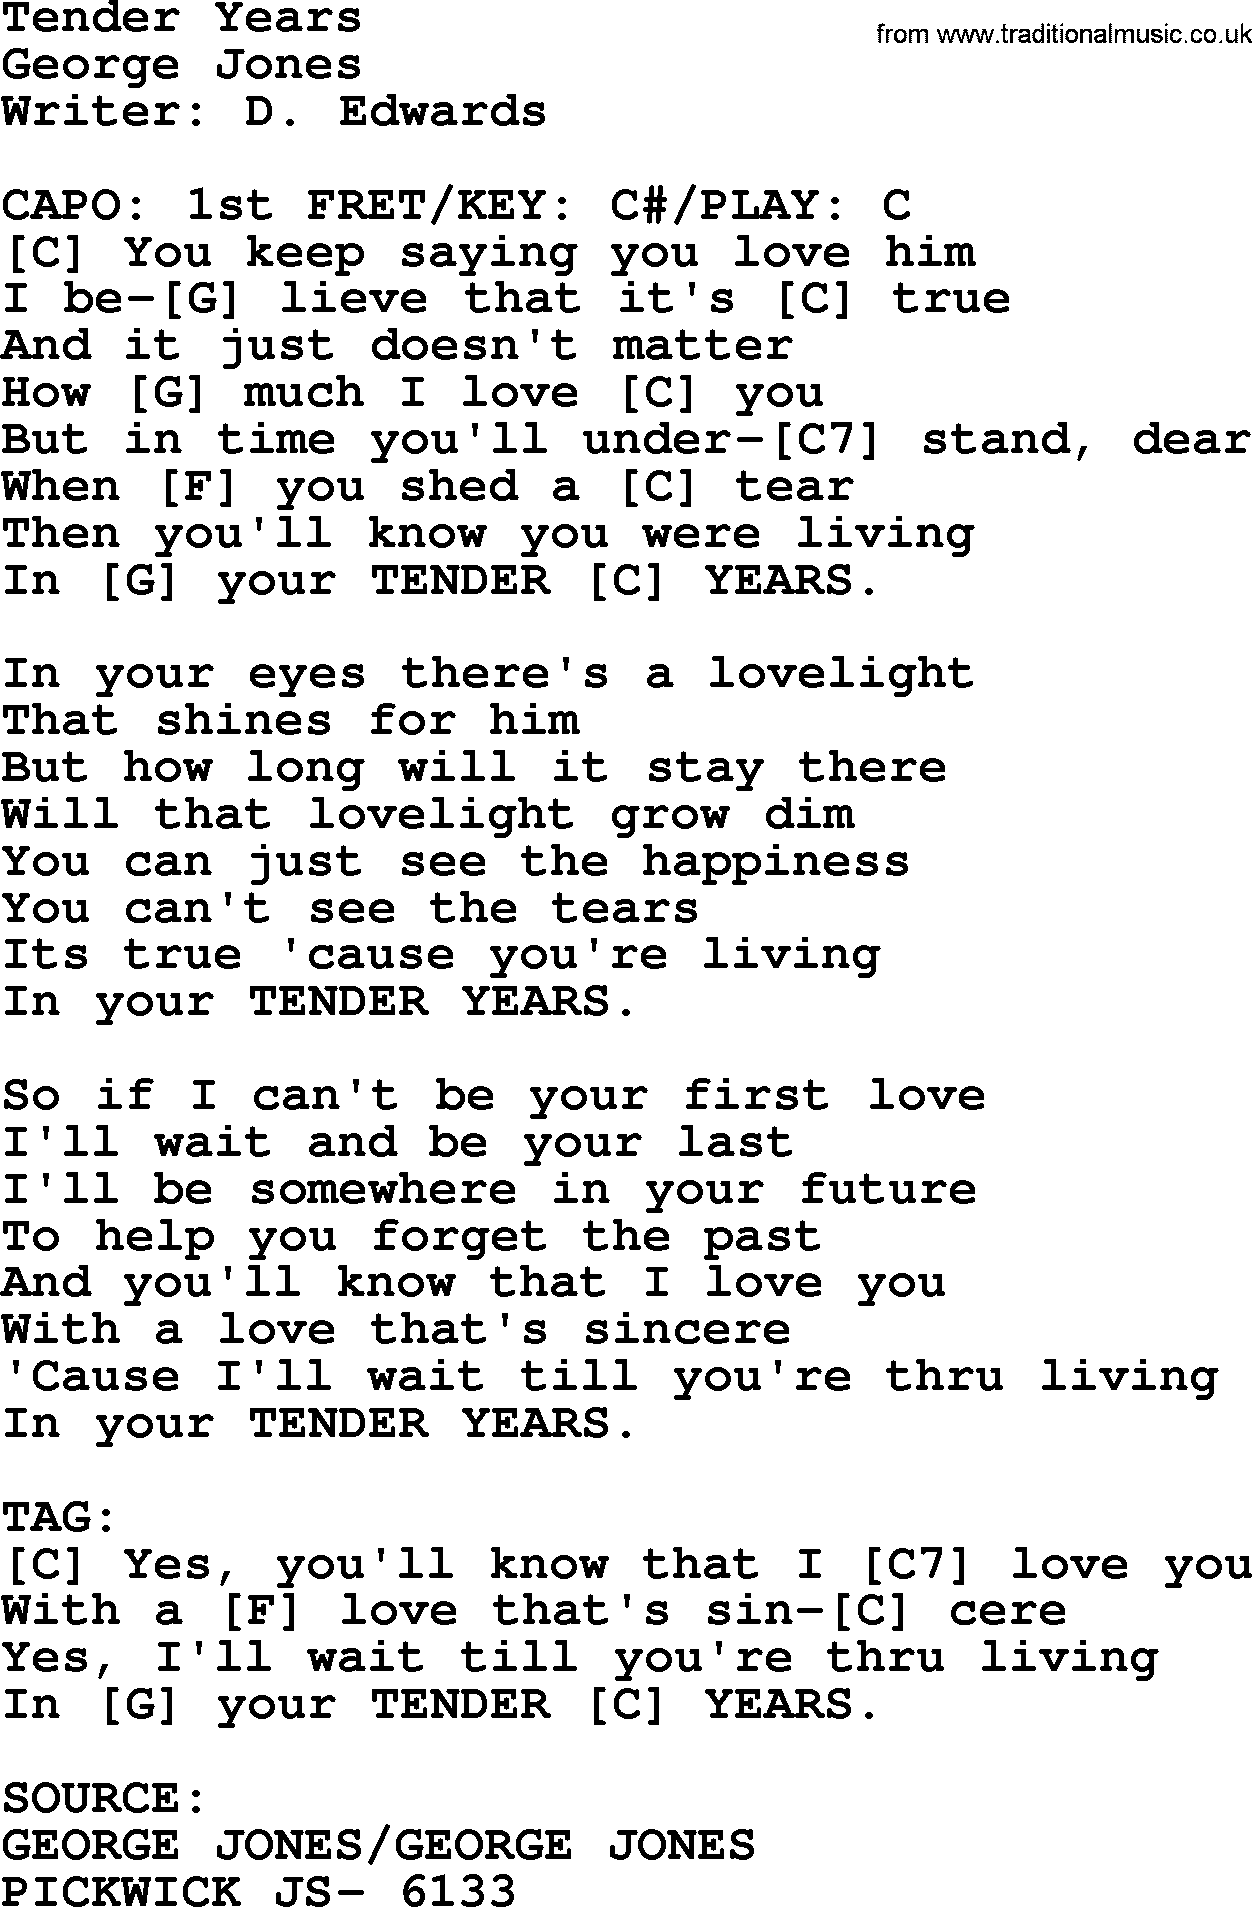 George Jones song: Tender Years, lyrics and chords